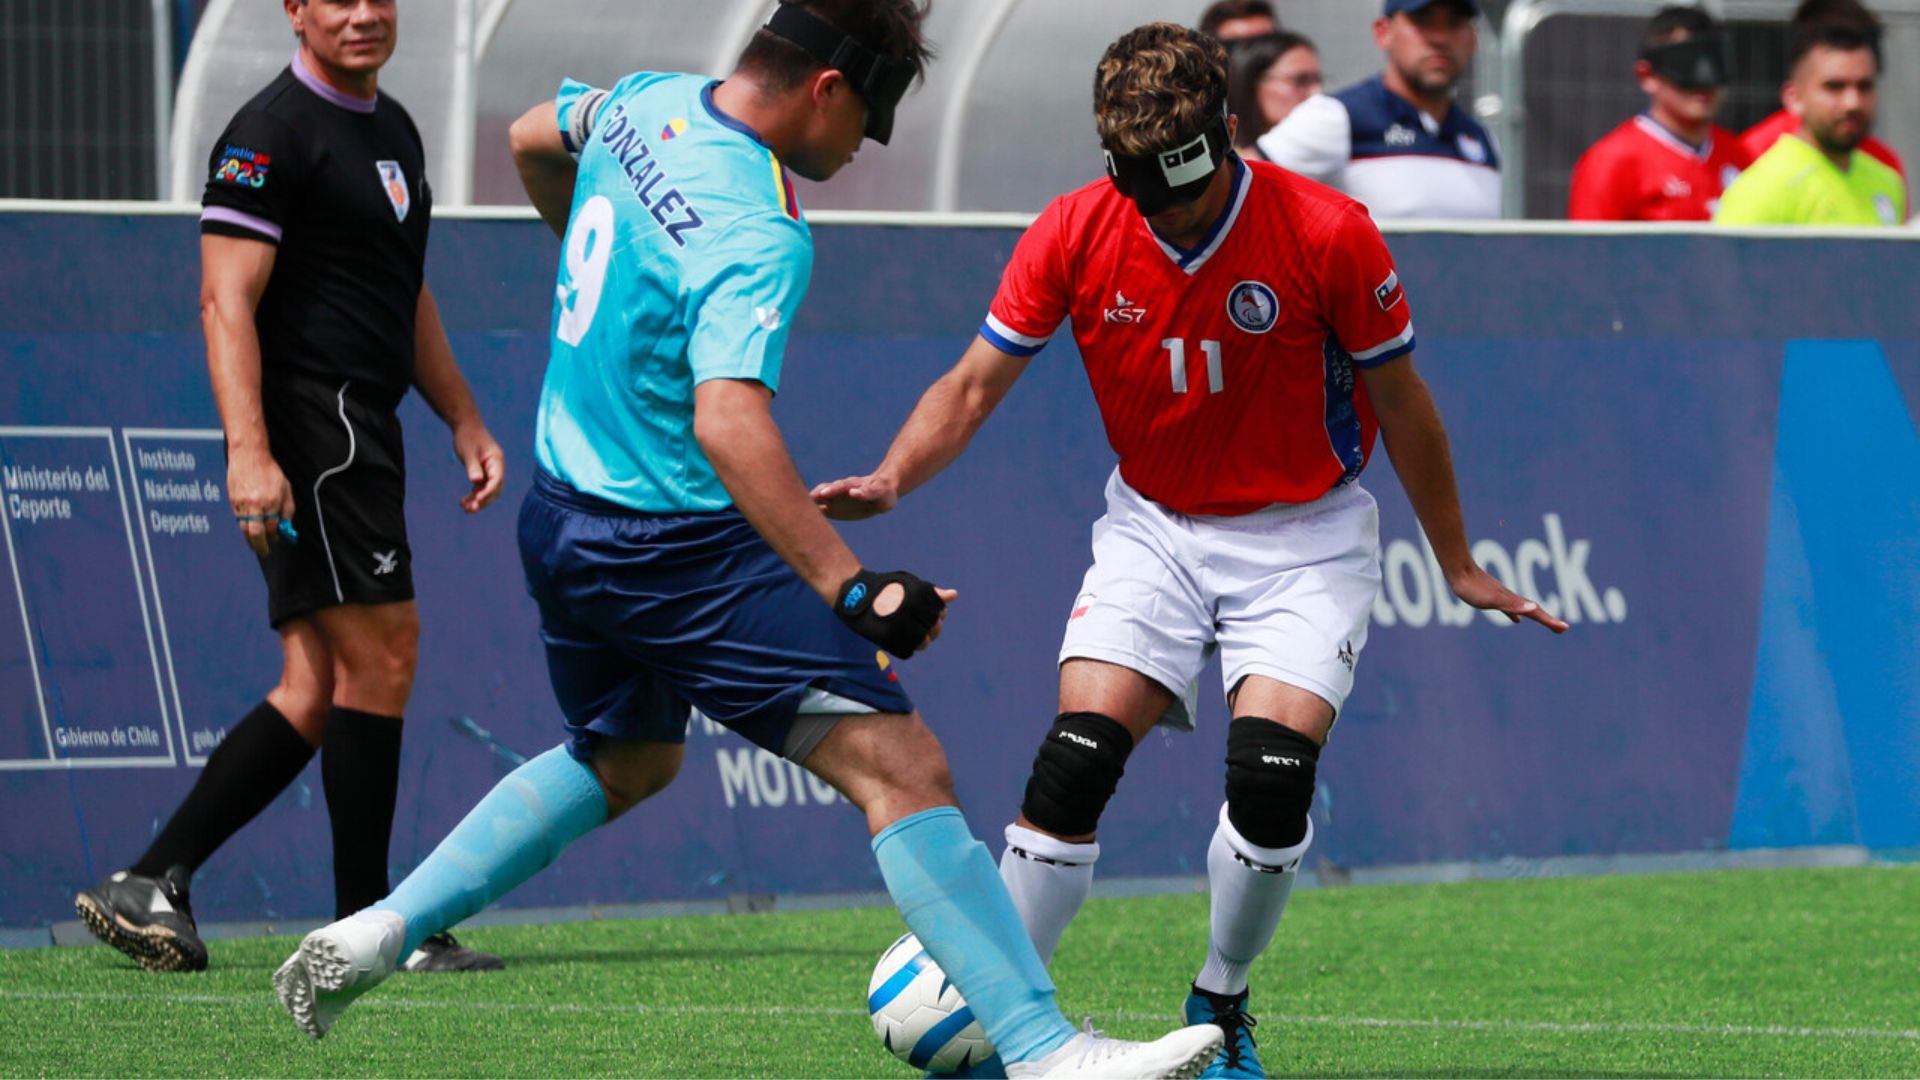 Fútbol para ciegos: Colombia derrotó a Chile y disputará medalla